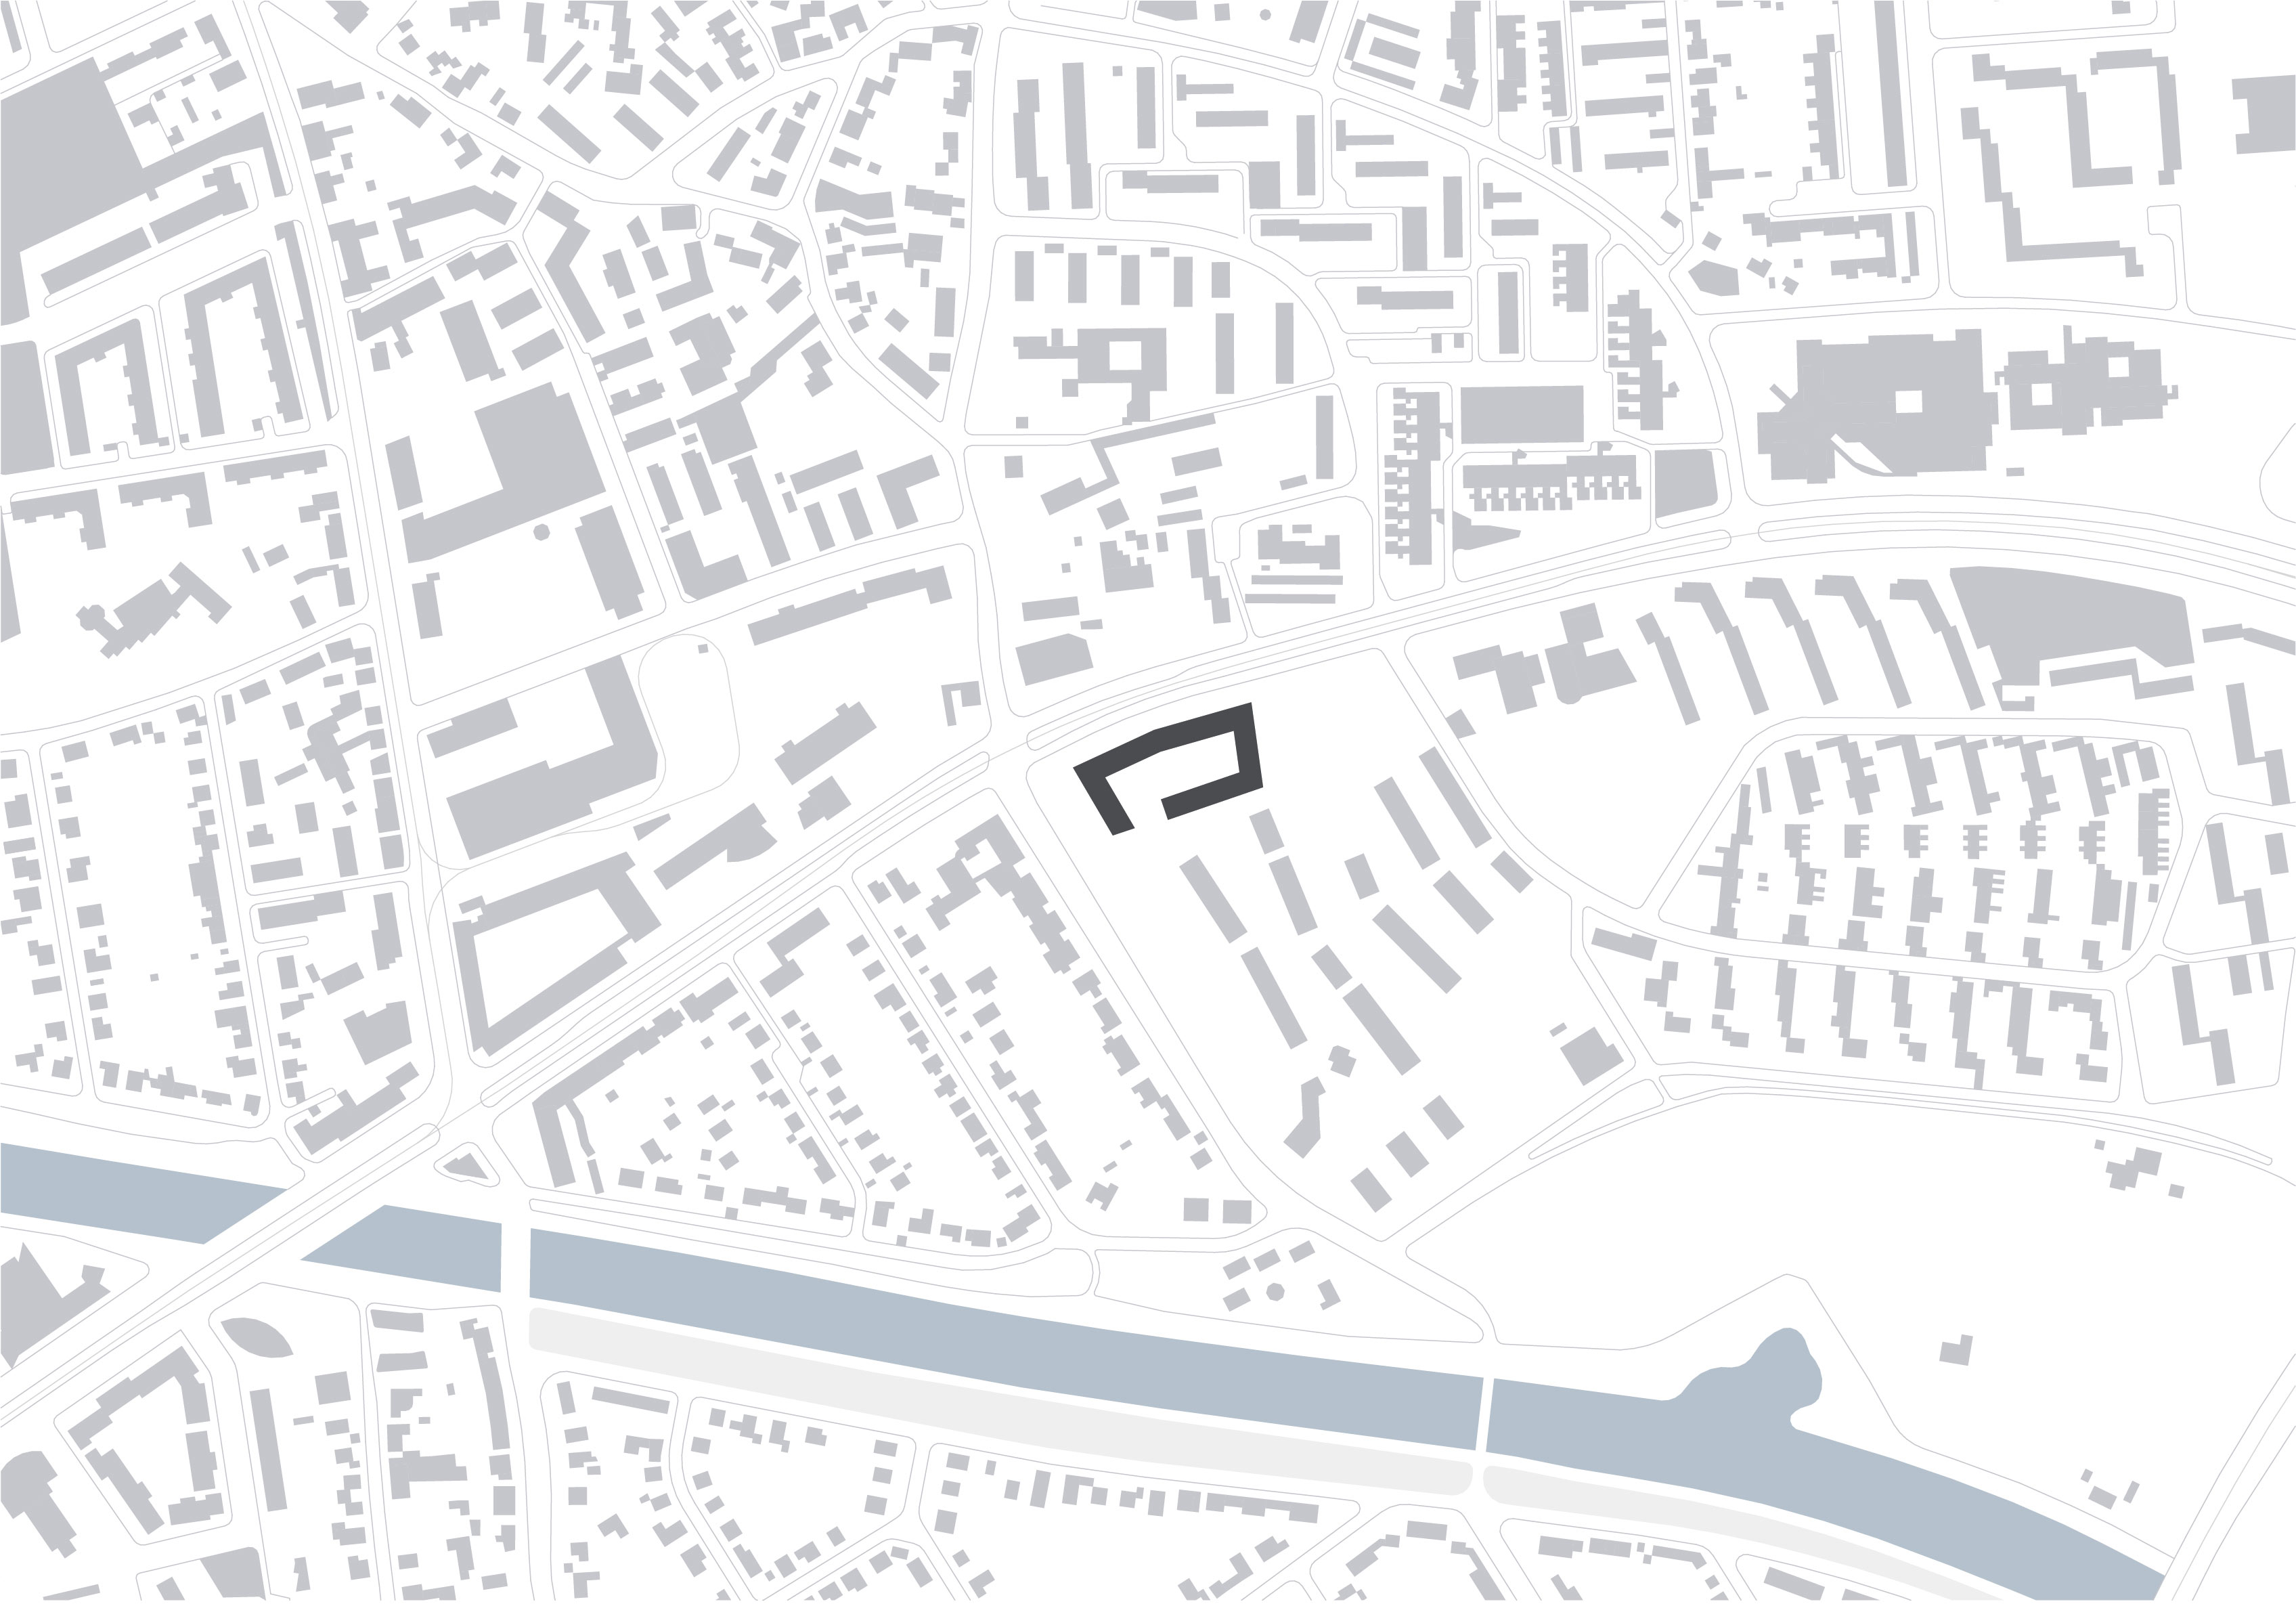 Büro- und Wohngebäude Podbielskistraße in Hannover, Lageplan 1:5000